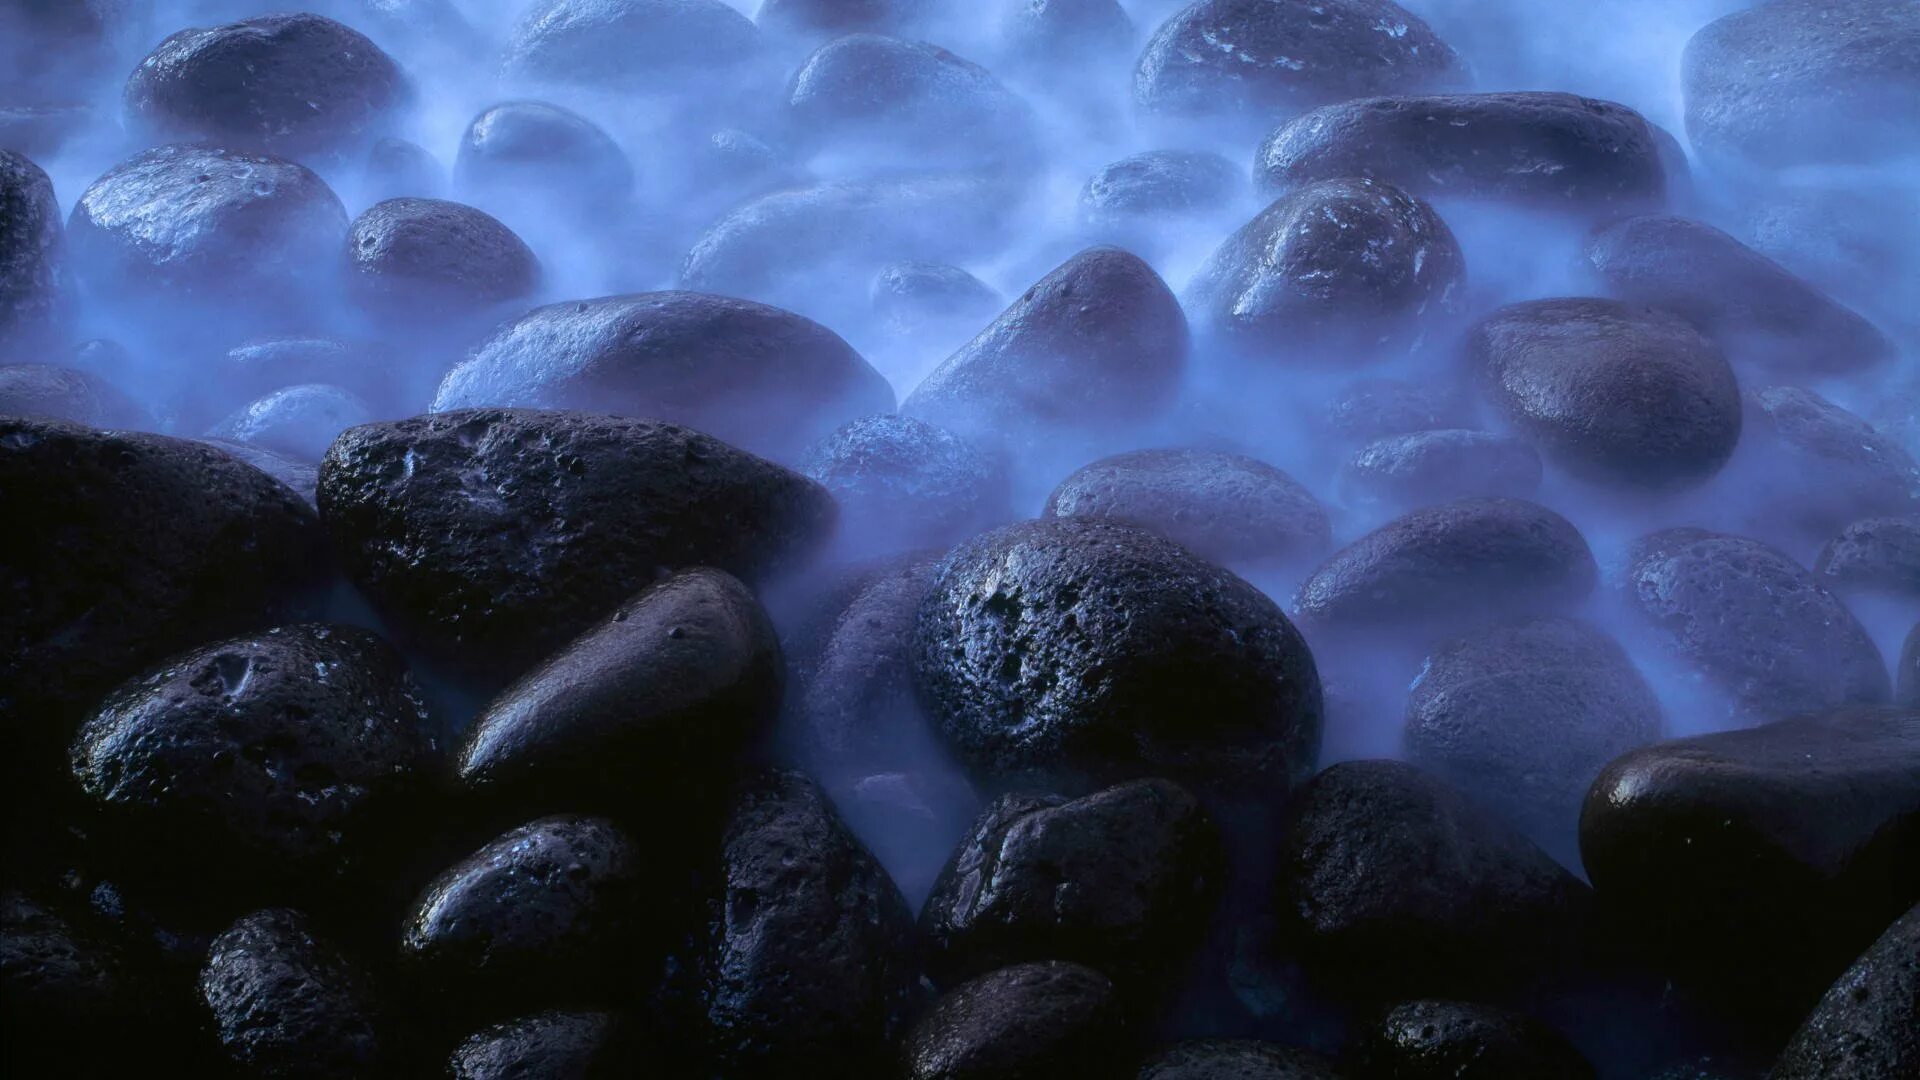 Темный камень. Черные камни галька. Черные камни в воде. Камни в воде. Долями подводные камни